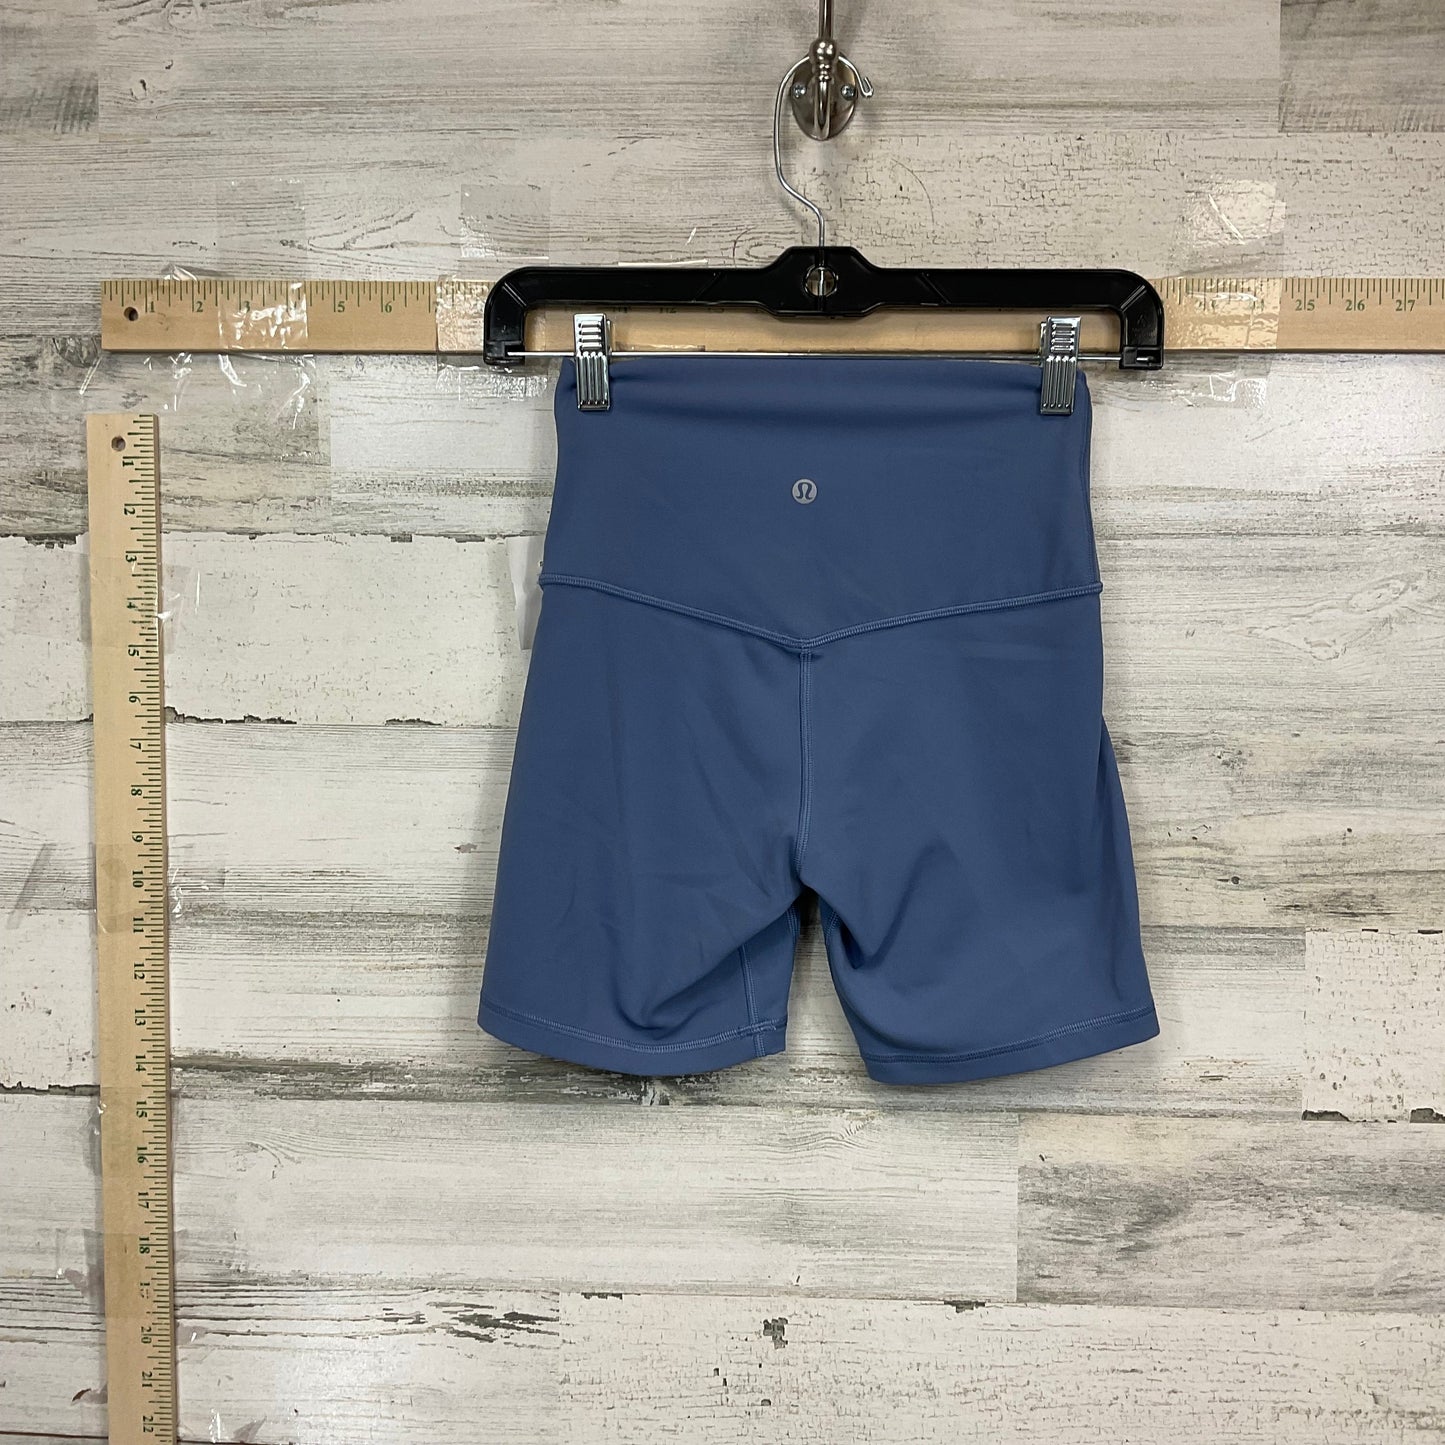 Blue Athletic Shorts Lululemon, Size S